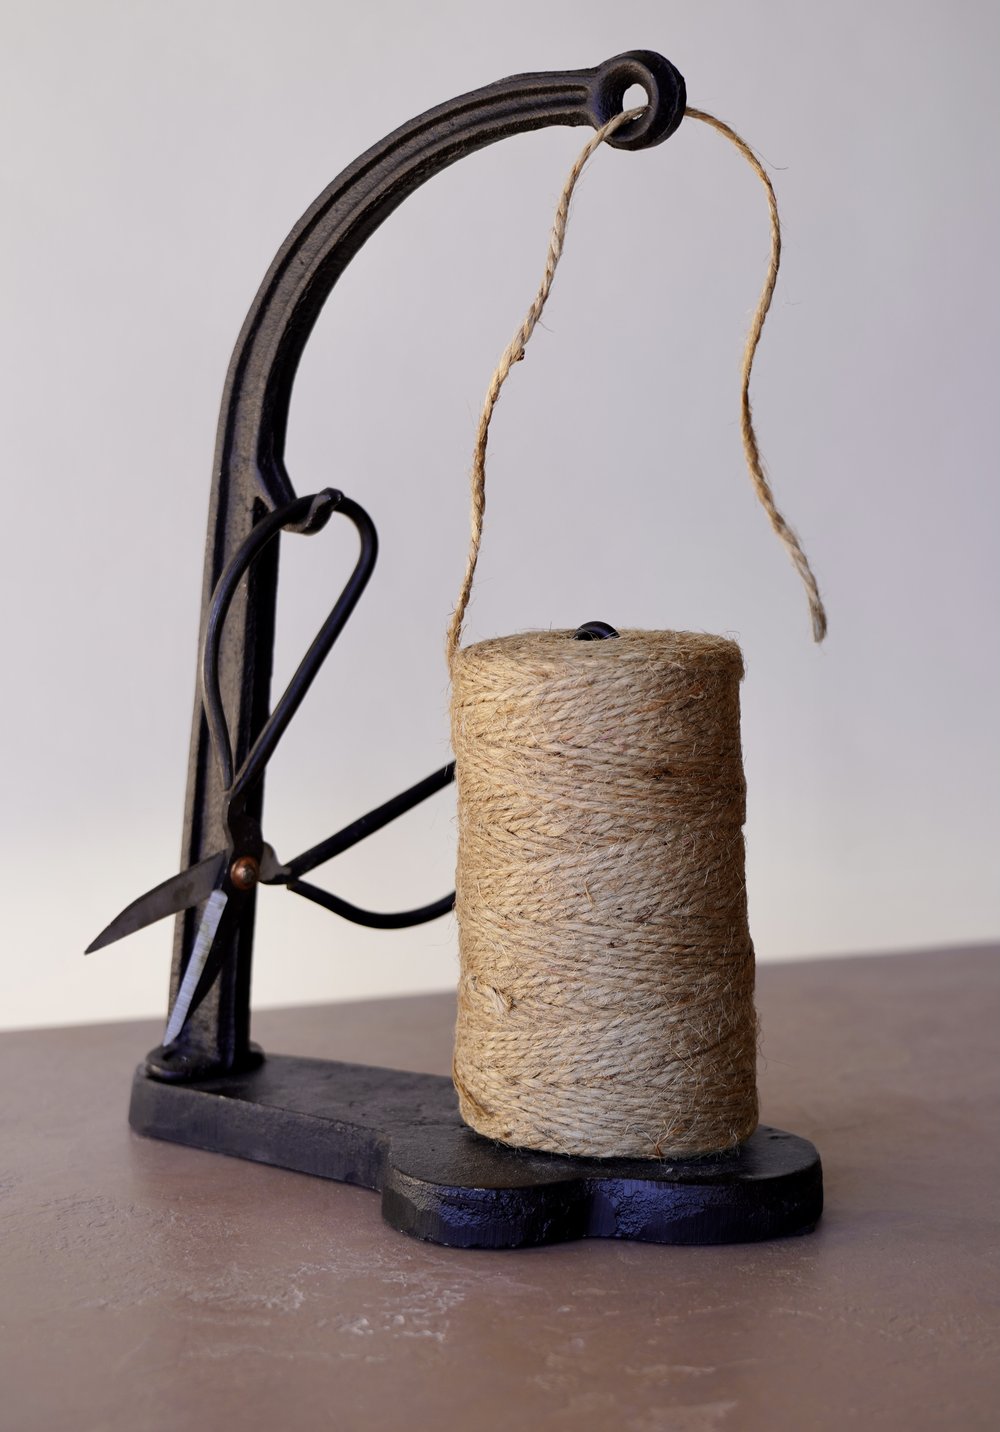 Cast iron string holder, jute rope dispenser